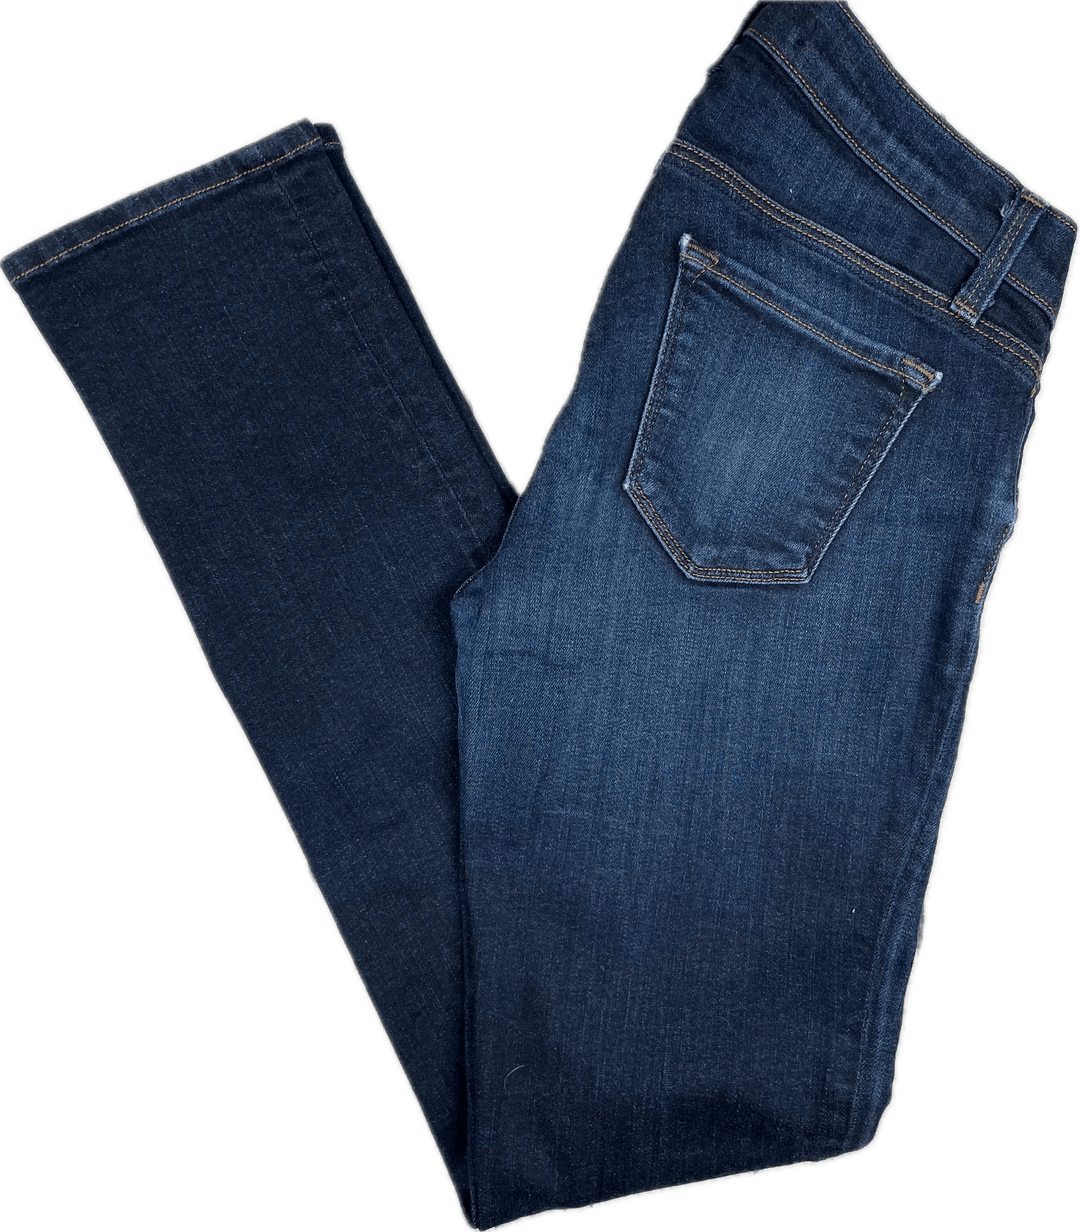 J Brand Eminence Maternity Stretch Skinny Jeans -Size 25 - Jean Pool